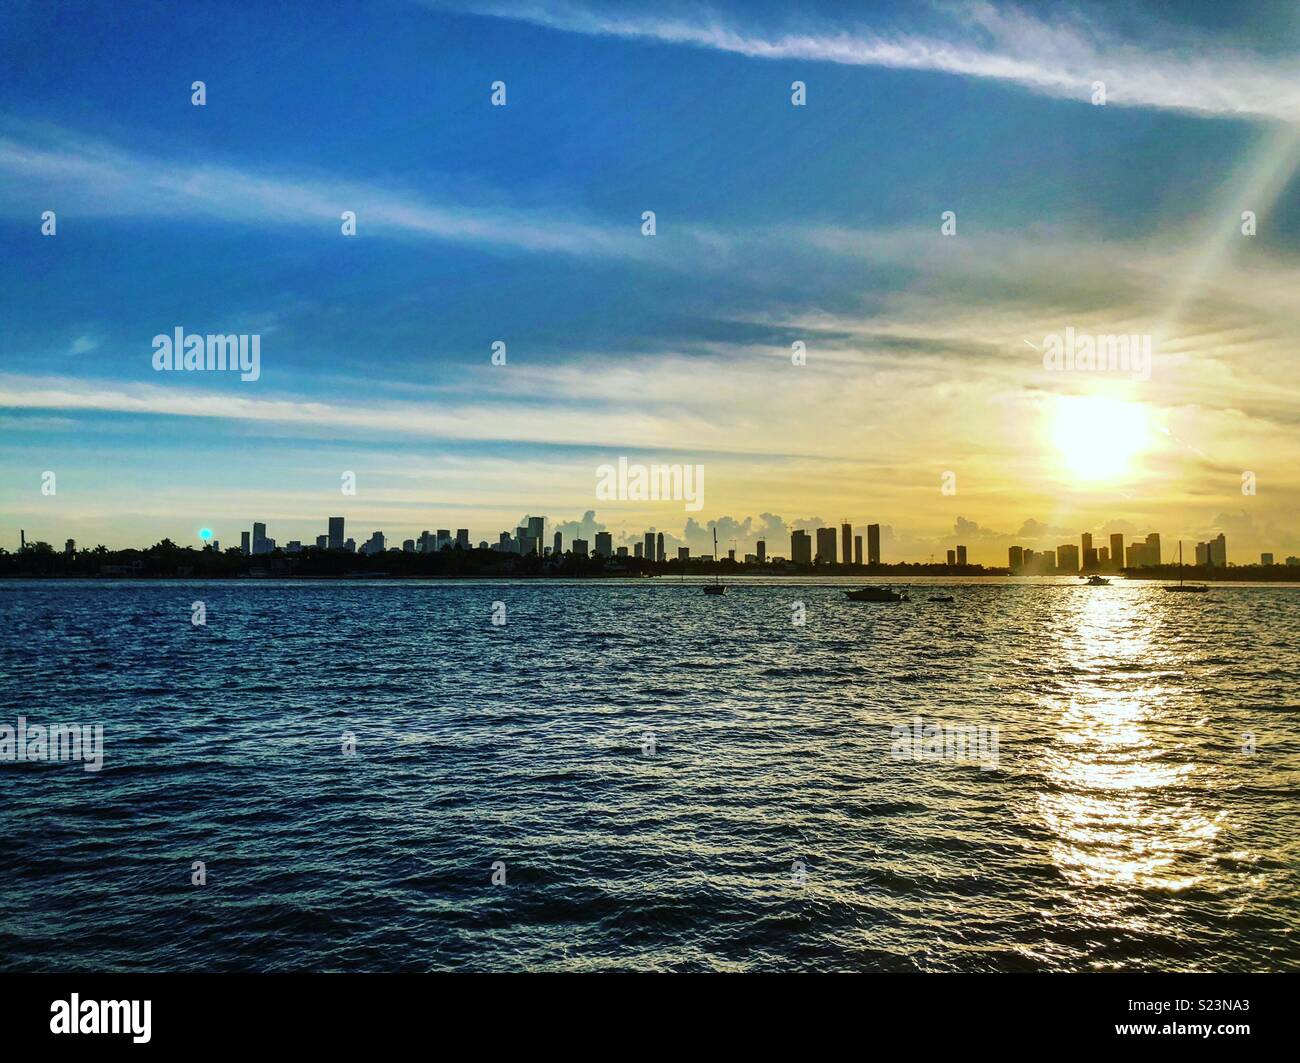 Miami skyline at sunset Stock Photo